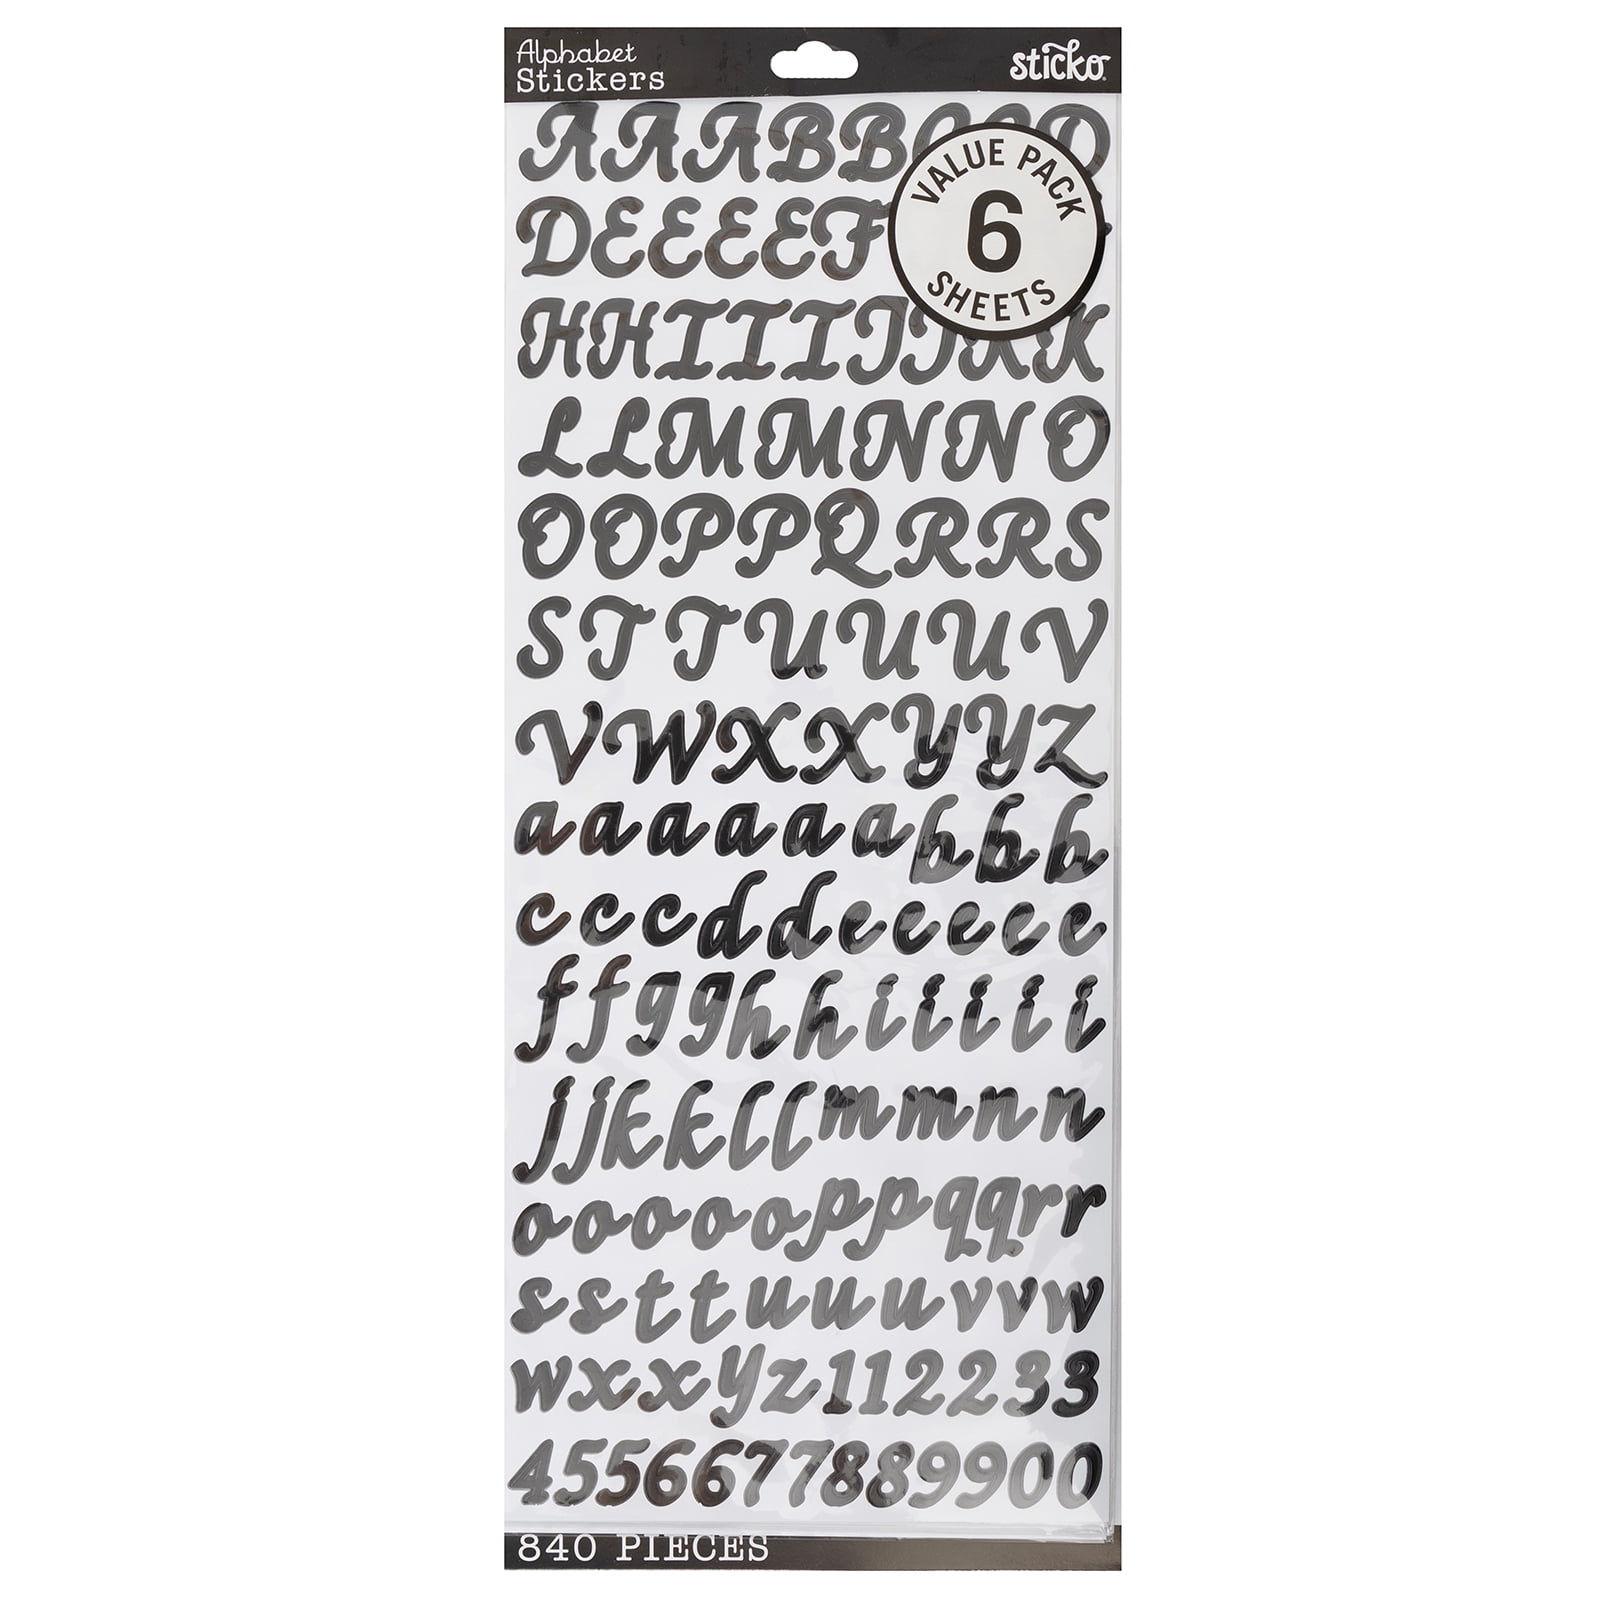 Alphabet Stickers Sticker for Sale by zmrudman